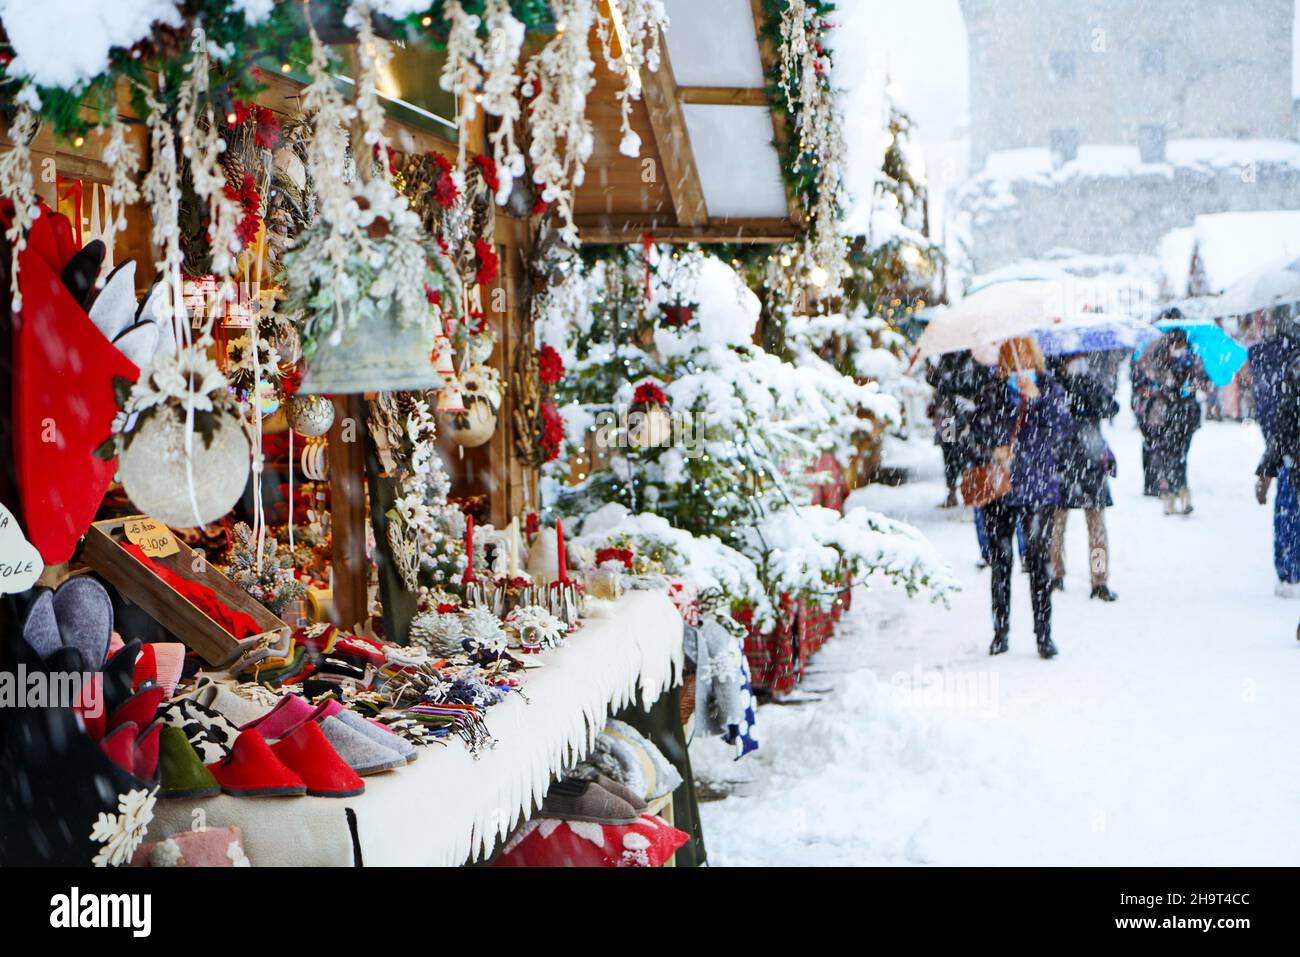 Traditioneller Weihnachtsmarkt bei starkem Schneefall. Aosta, Italien – Dezember 2021 Stockfoto